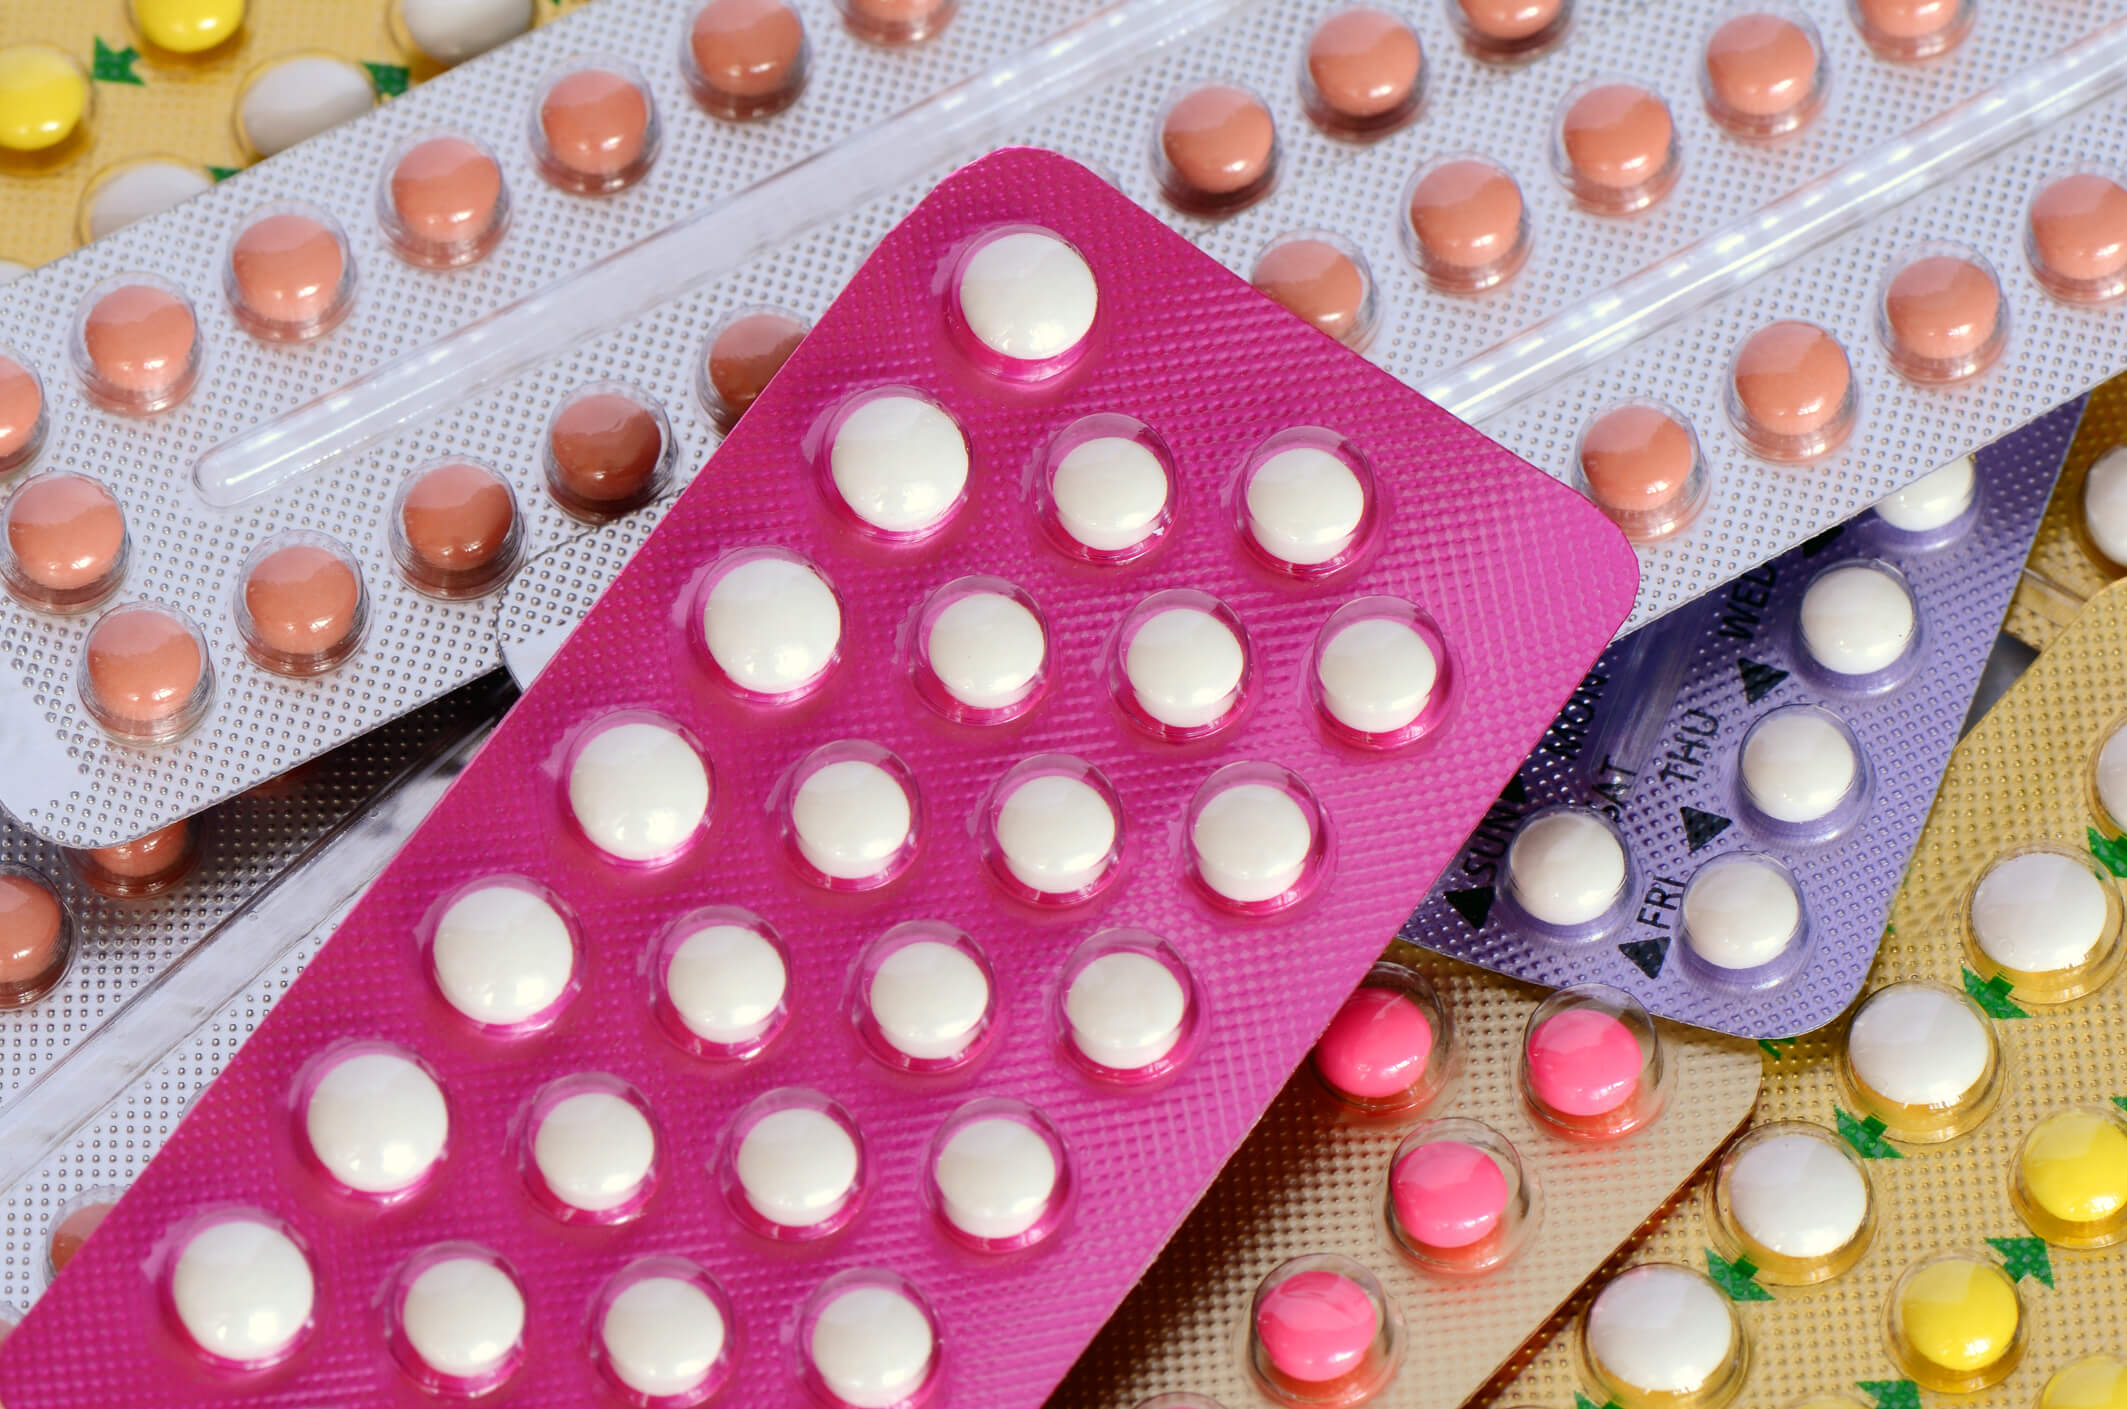 Pillola anticoncezionale: non solo contraccezione